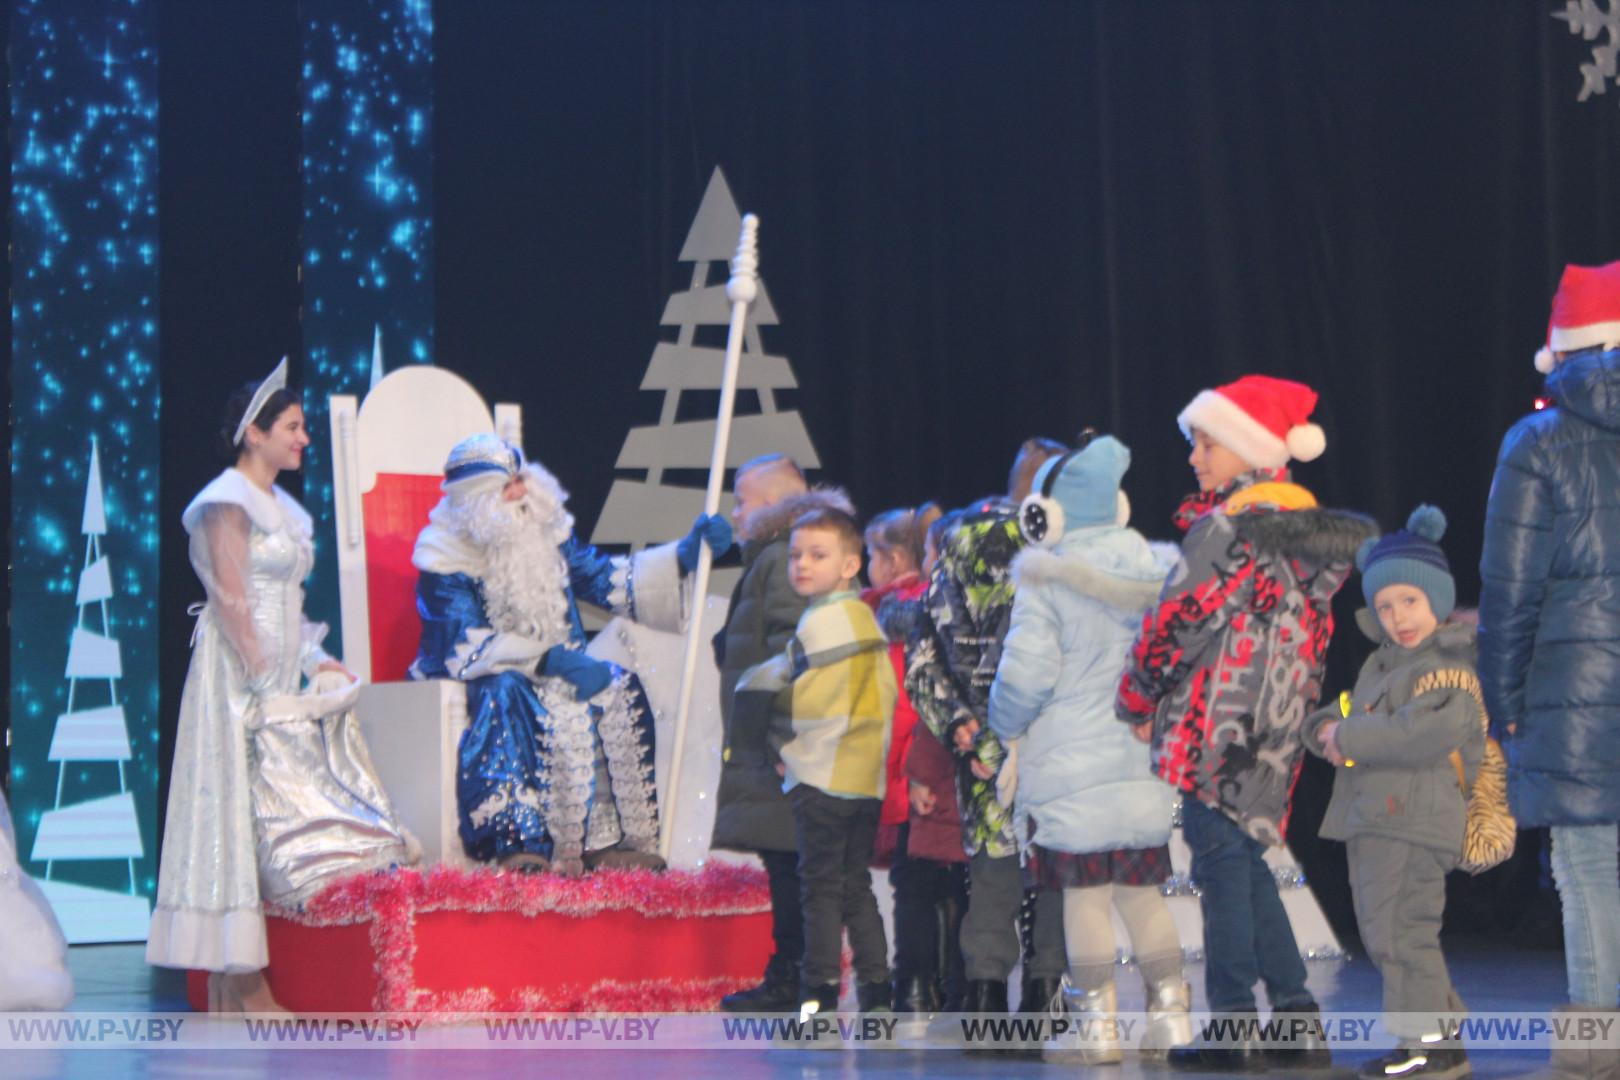 Сегодня в Пинском городском центре культуры и творчества в рамках республиканской благотворительной акции «Наши дети» прошел новогодний праздник.